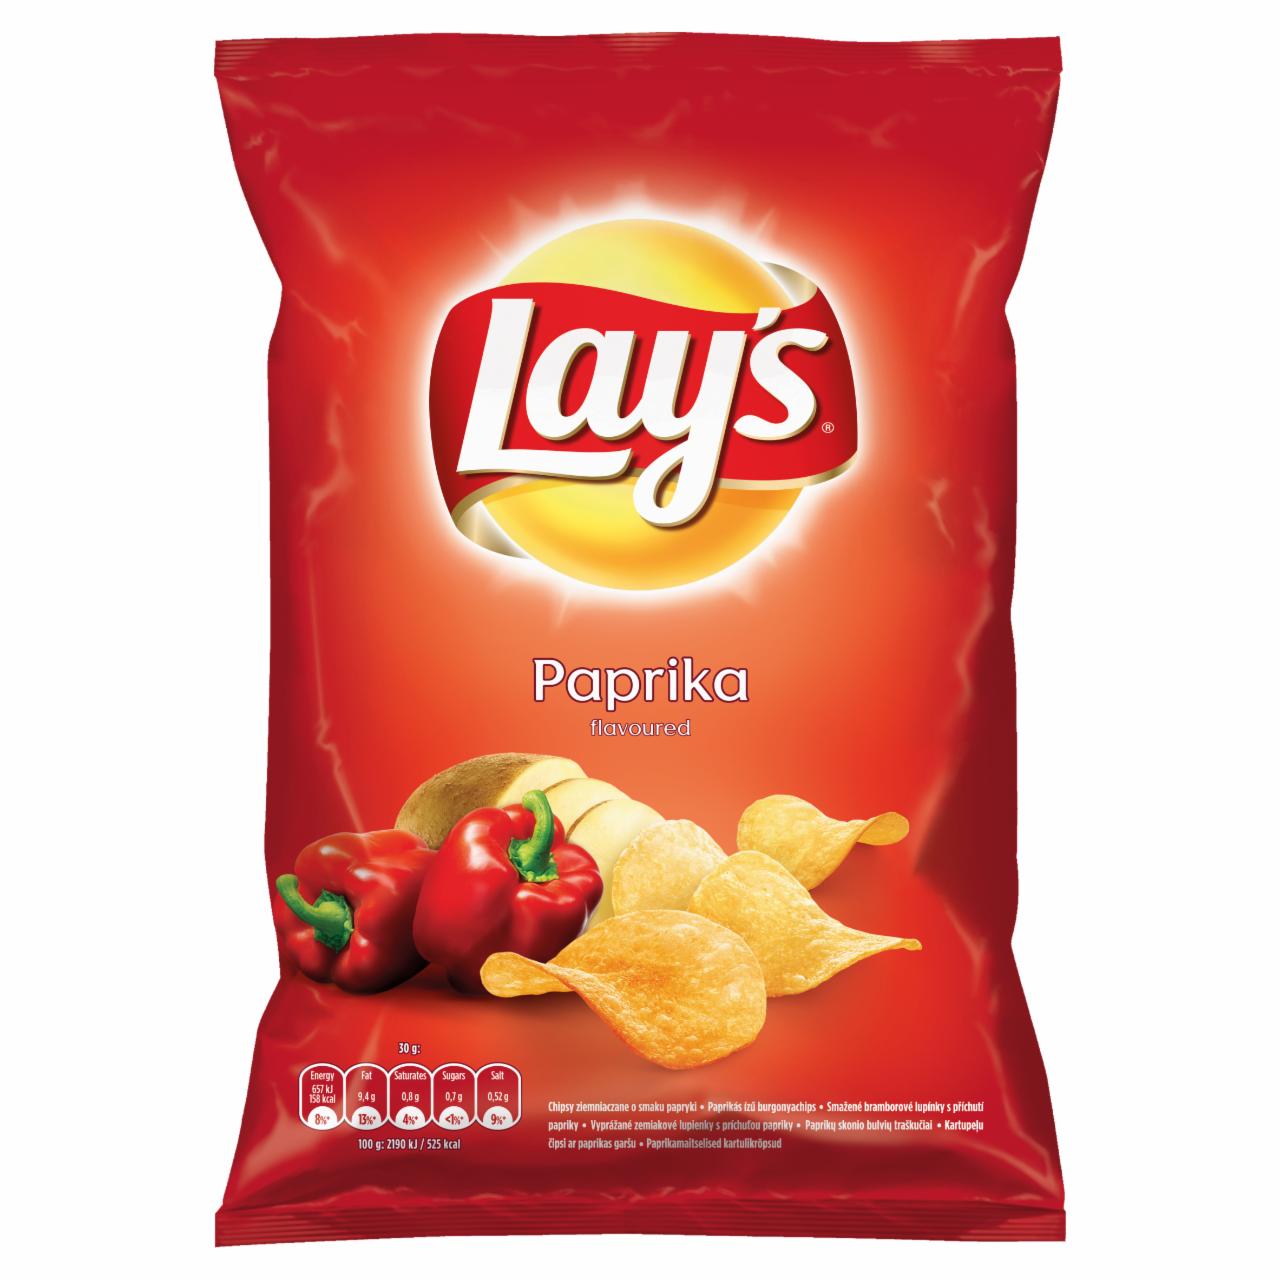 Zdjęcia - Lay's Chipsy ziemniaczane o smaku papryki 70 g